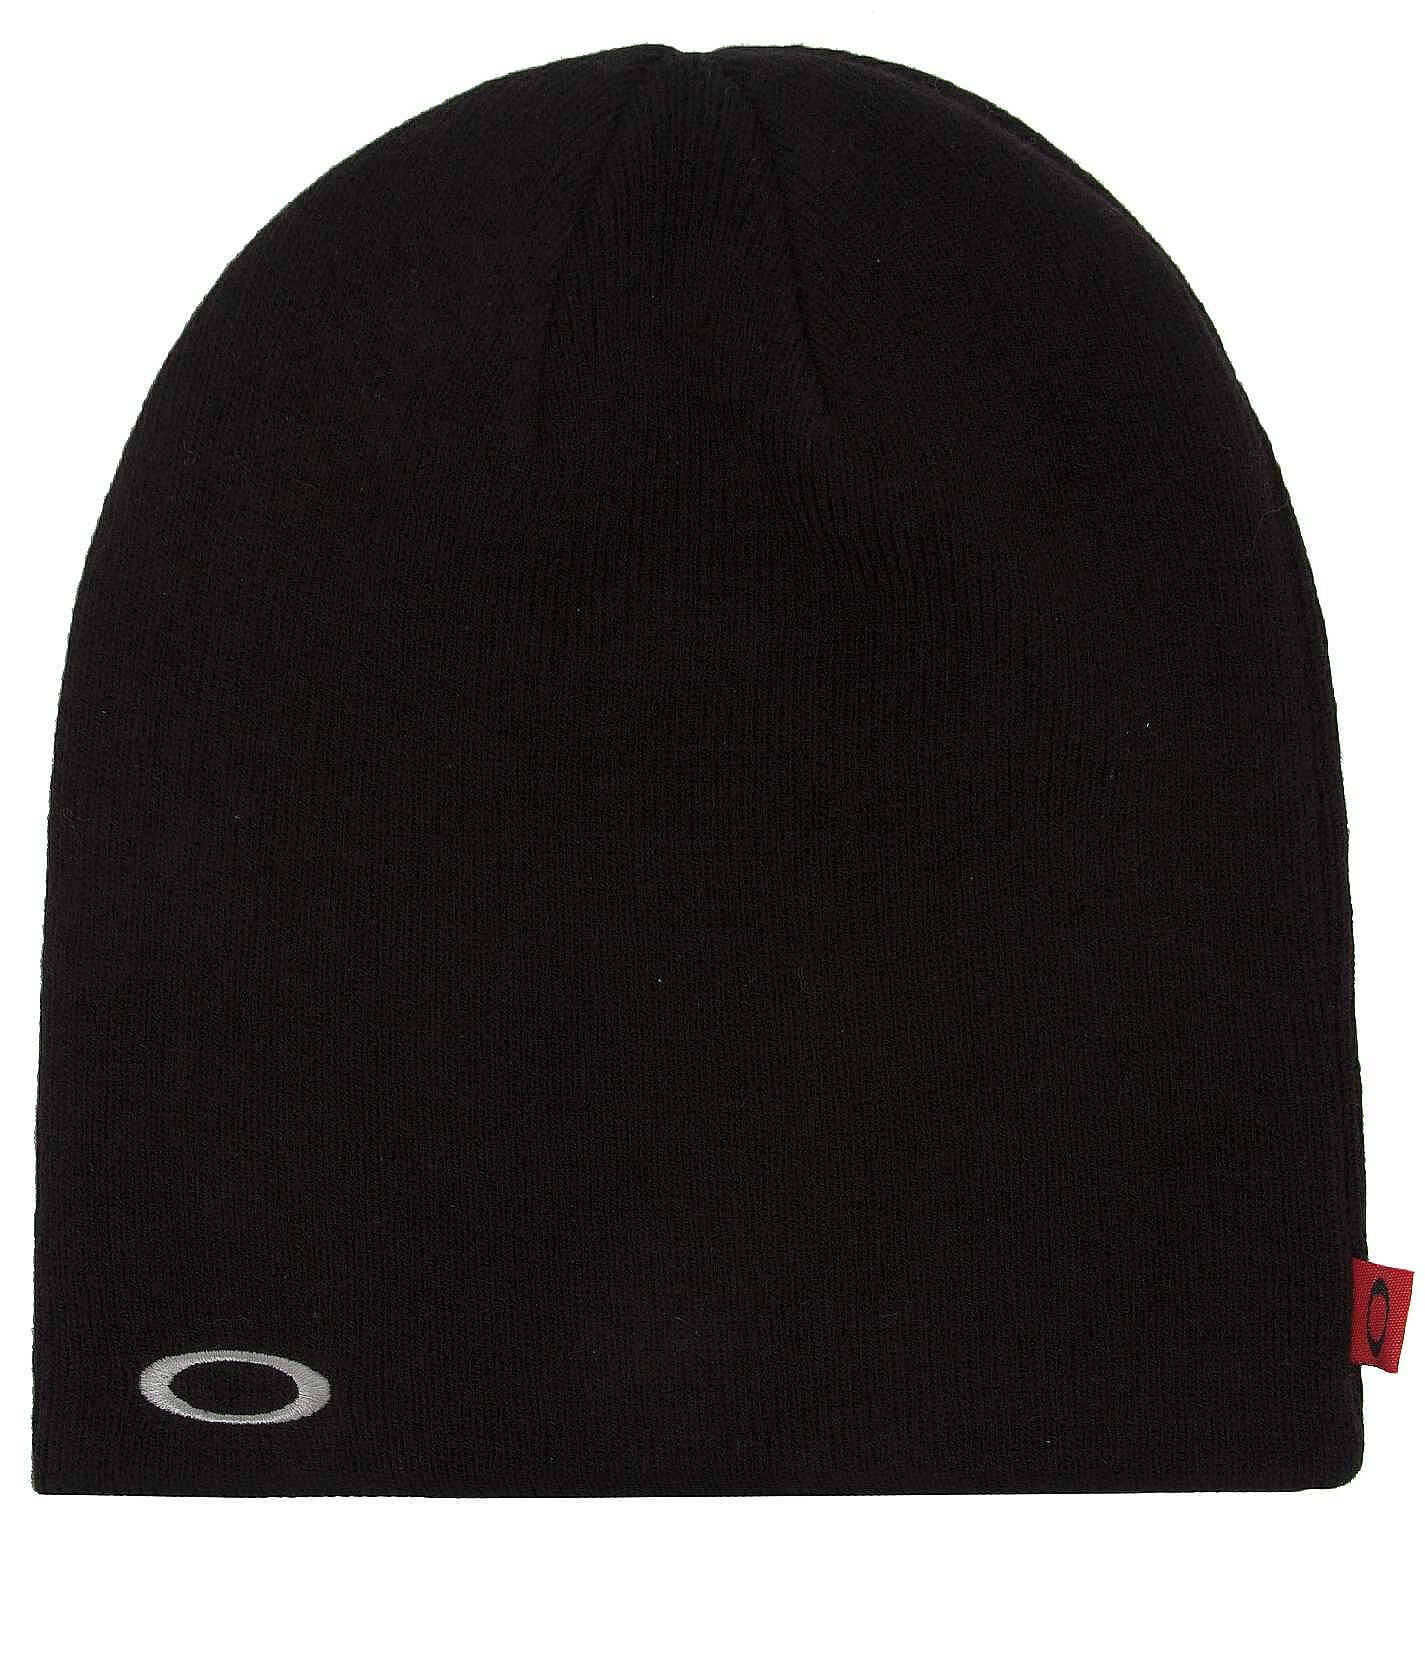 Oakley Fine Knit Beanie - Men's Hats in Black | Buckle